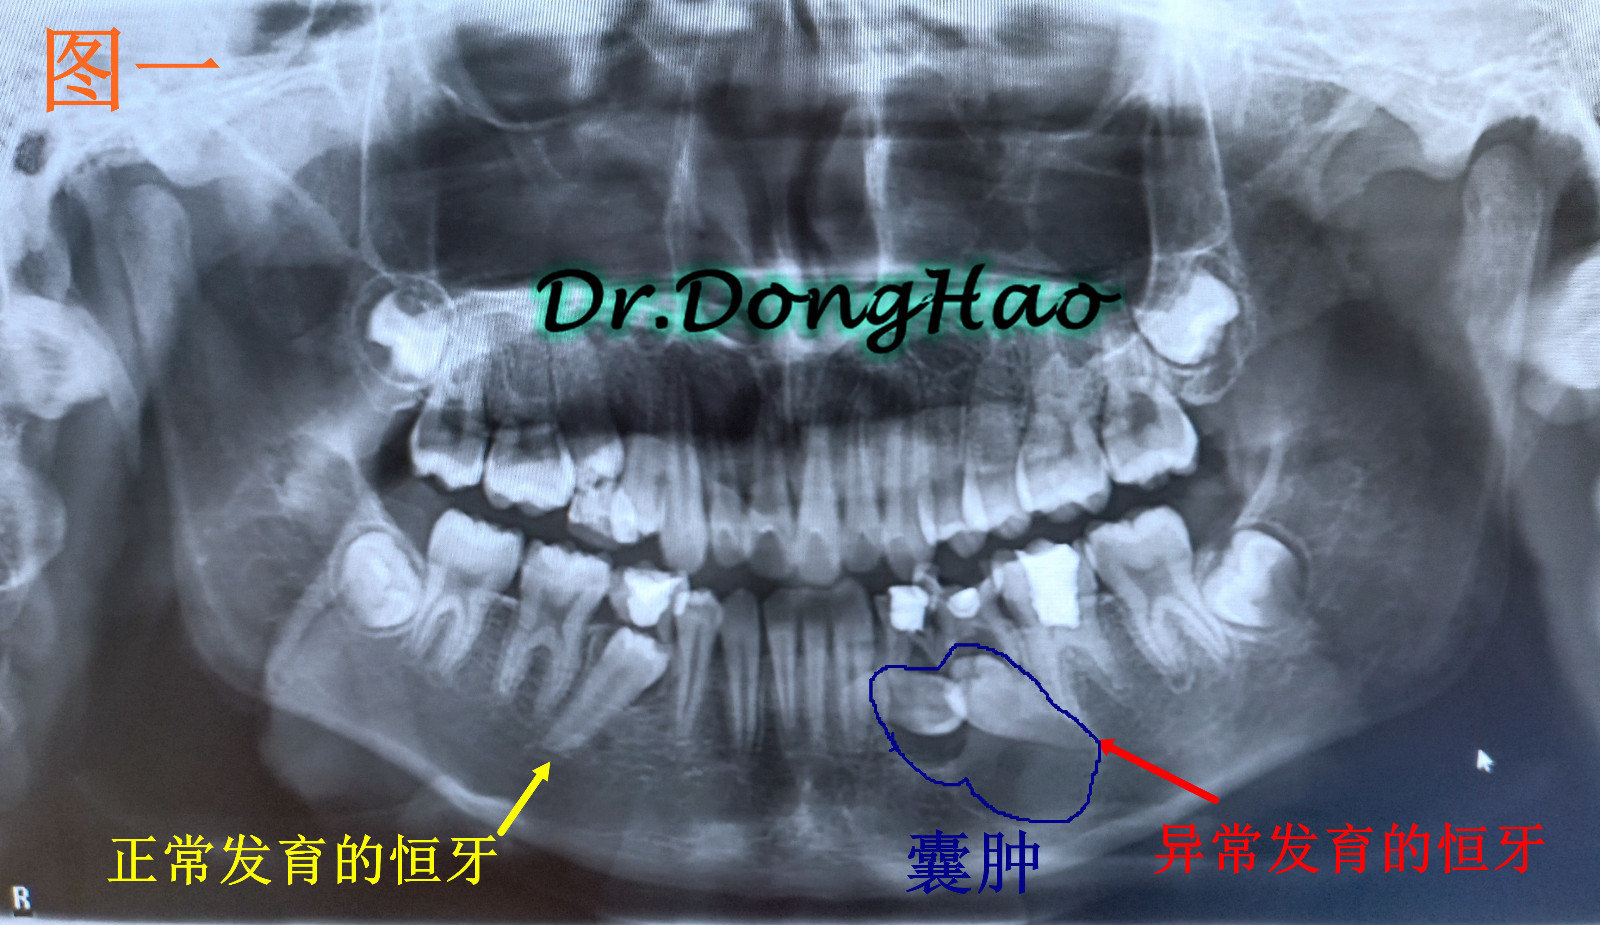 10岁了,这边的牙齿疼就在当地诊所看牙,一拍片就发现左边骨头里有东西